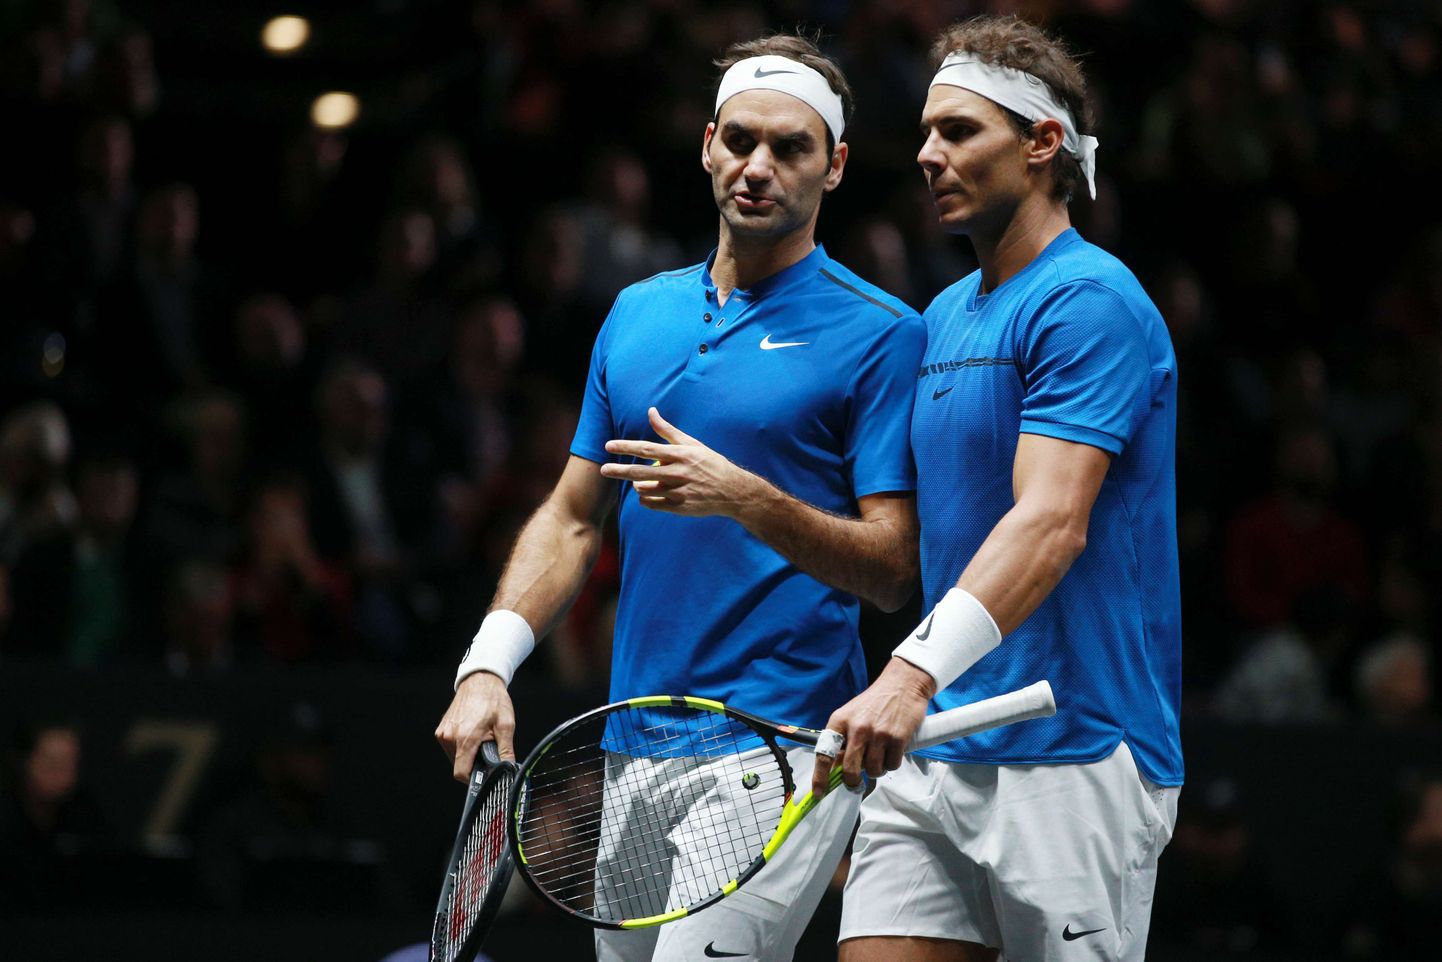 Viimati kohtusid Rafael Nadal ja Roger Federer septembris Prahas, aga siis olid nad ühel pool võrku, sest mõlemad kuulusid Laver Cup turniiril Euroopa võistkonda, kes alistas muu maailma esinduse.